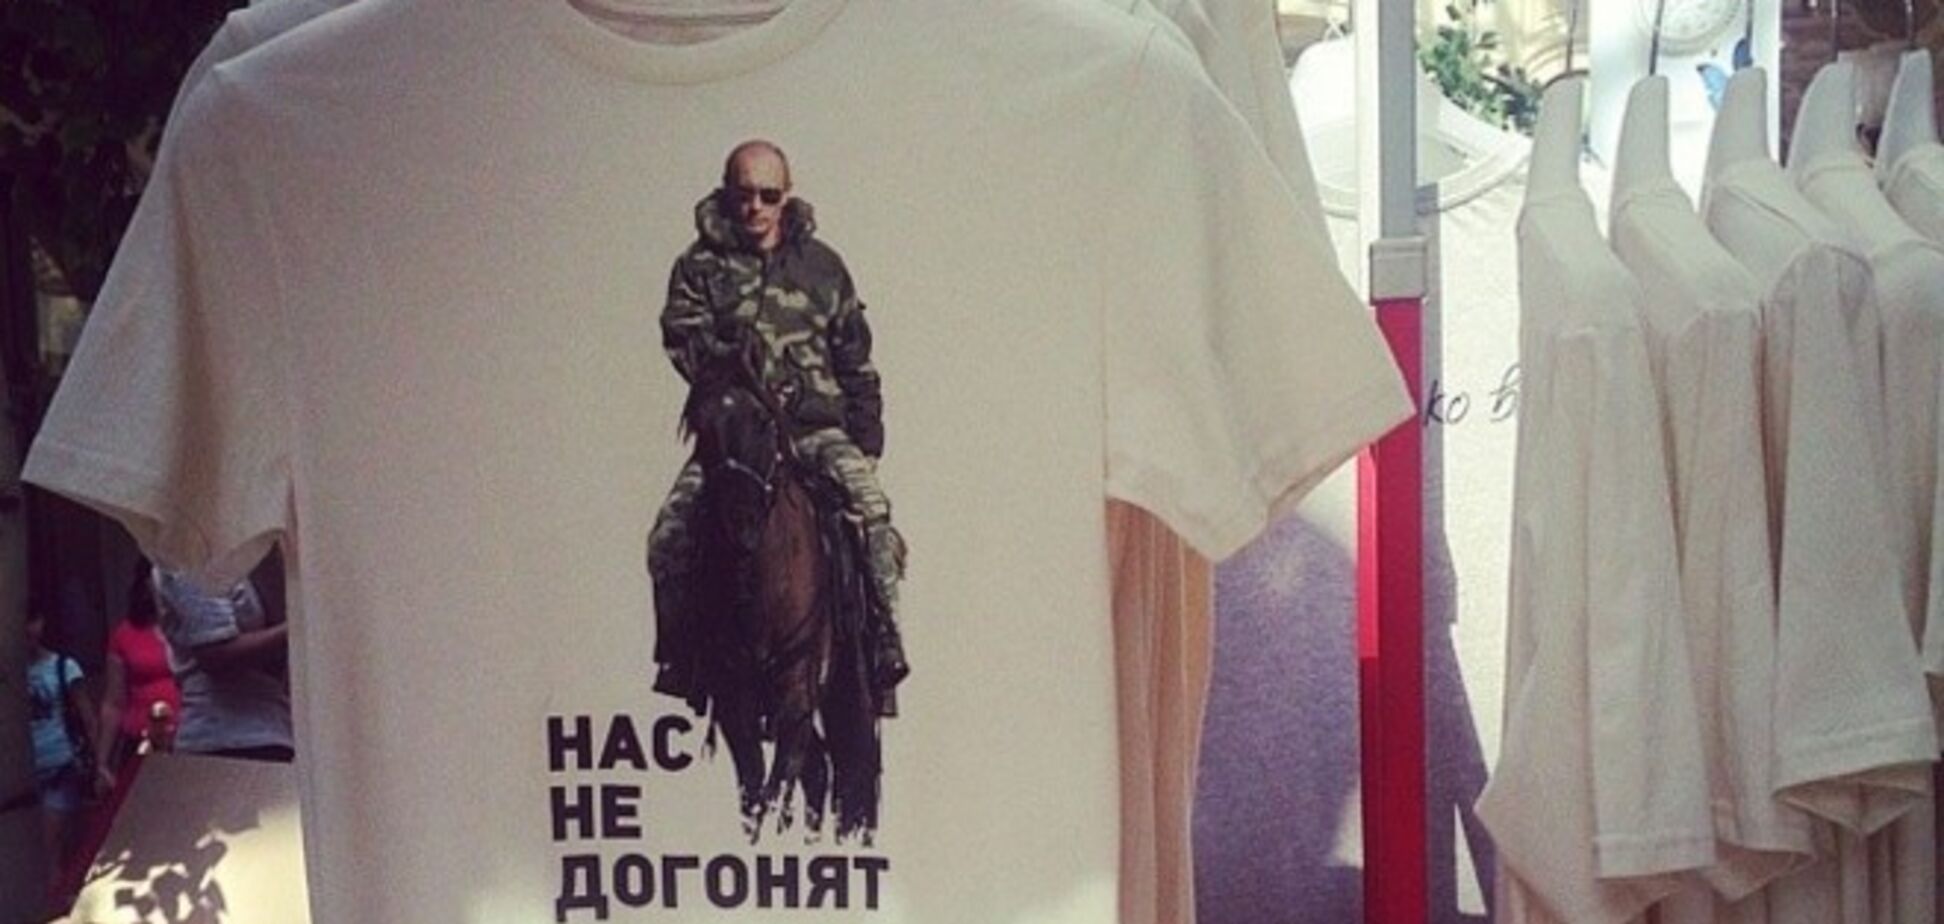 В России начали продавать футболки для фанатов Путина. Фотофакт